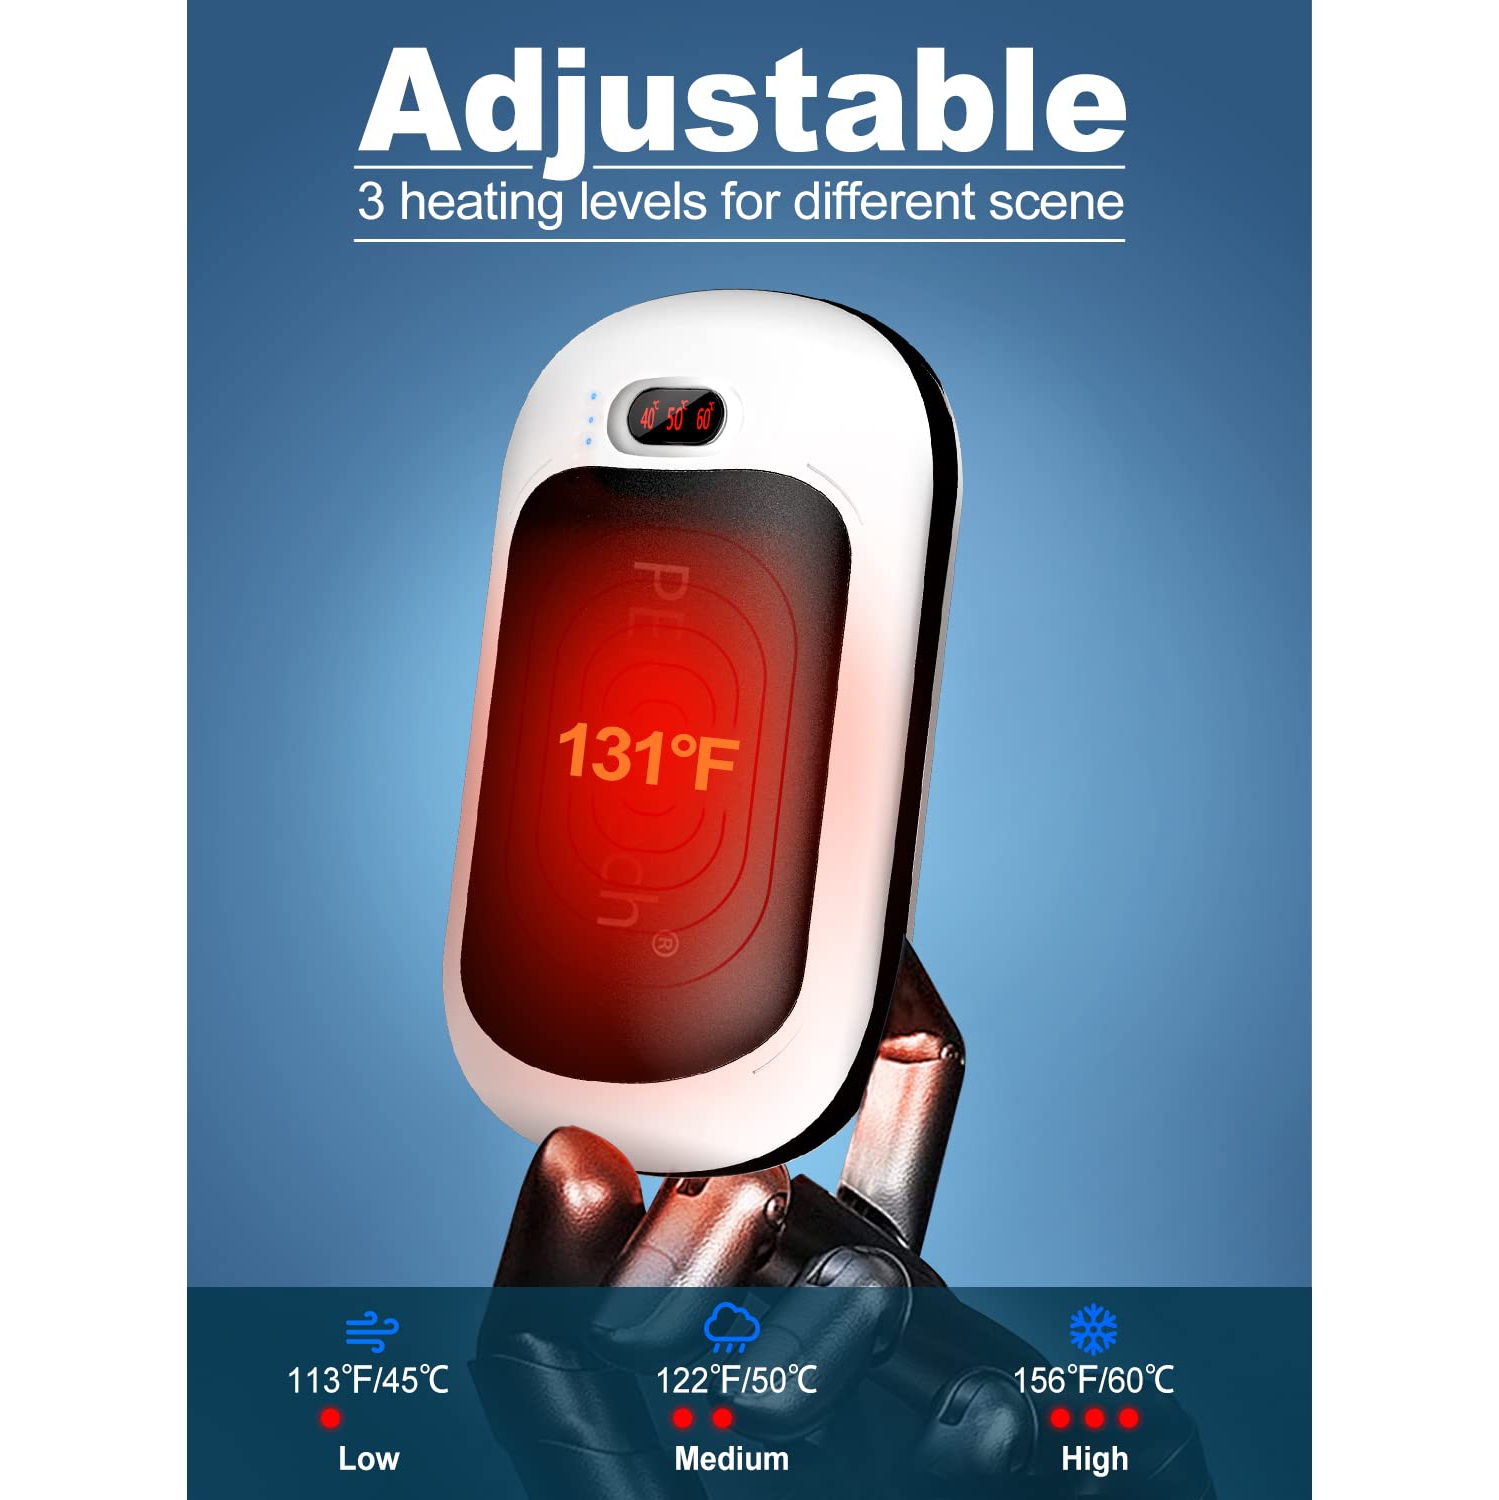 Chauffe-mains rechargeable 10200 mAh, chauffe-main électrique portatif avec  lumière d'urgence, autonomie de 16 heures USB, alimentation par batterie  pour Raynauds, arthrite, SPOR d'hiver extérieur